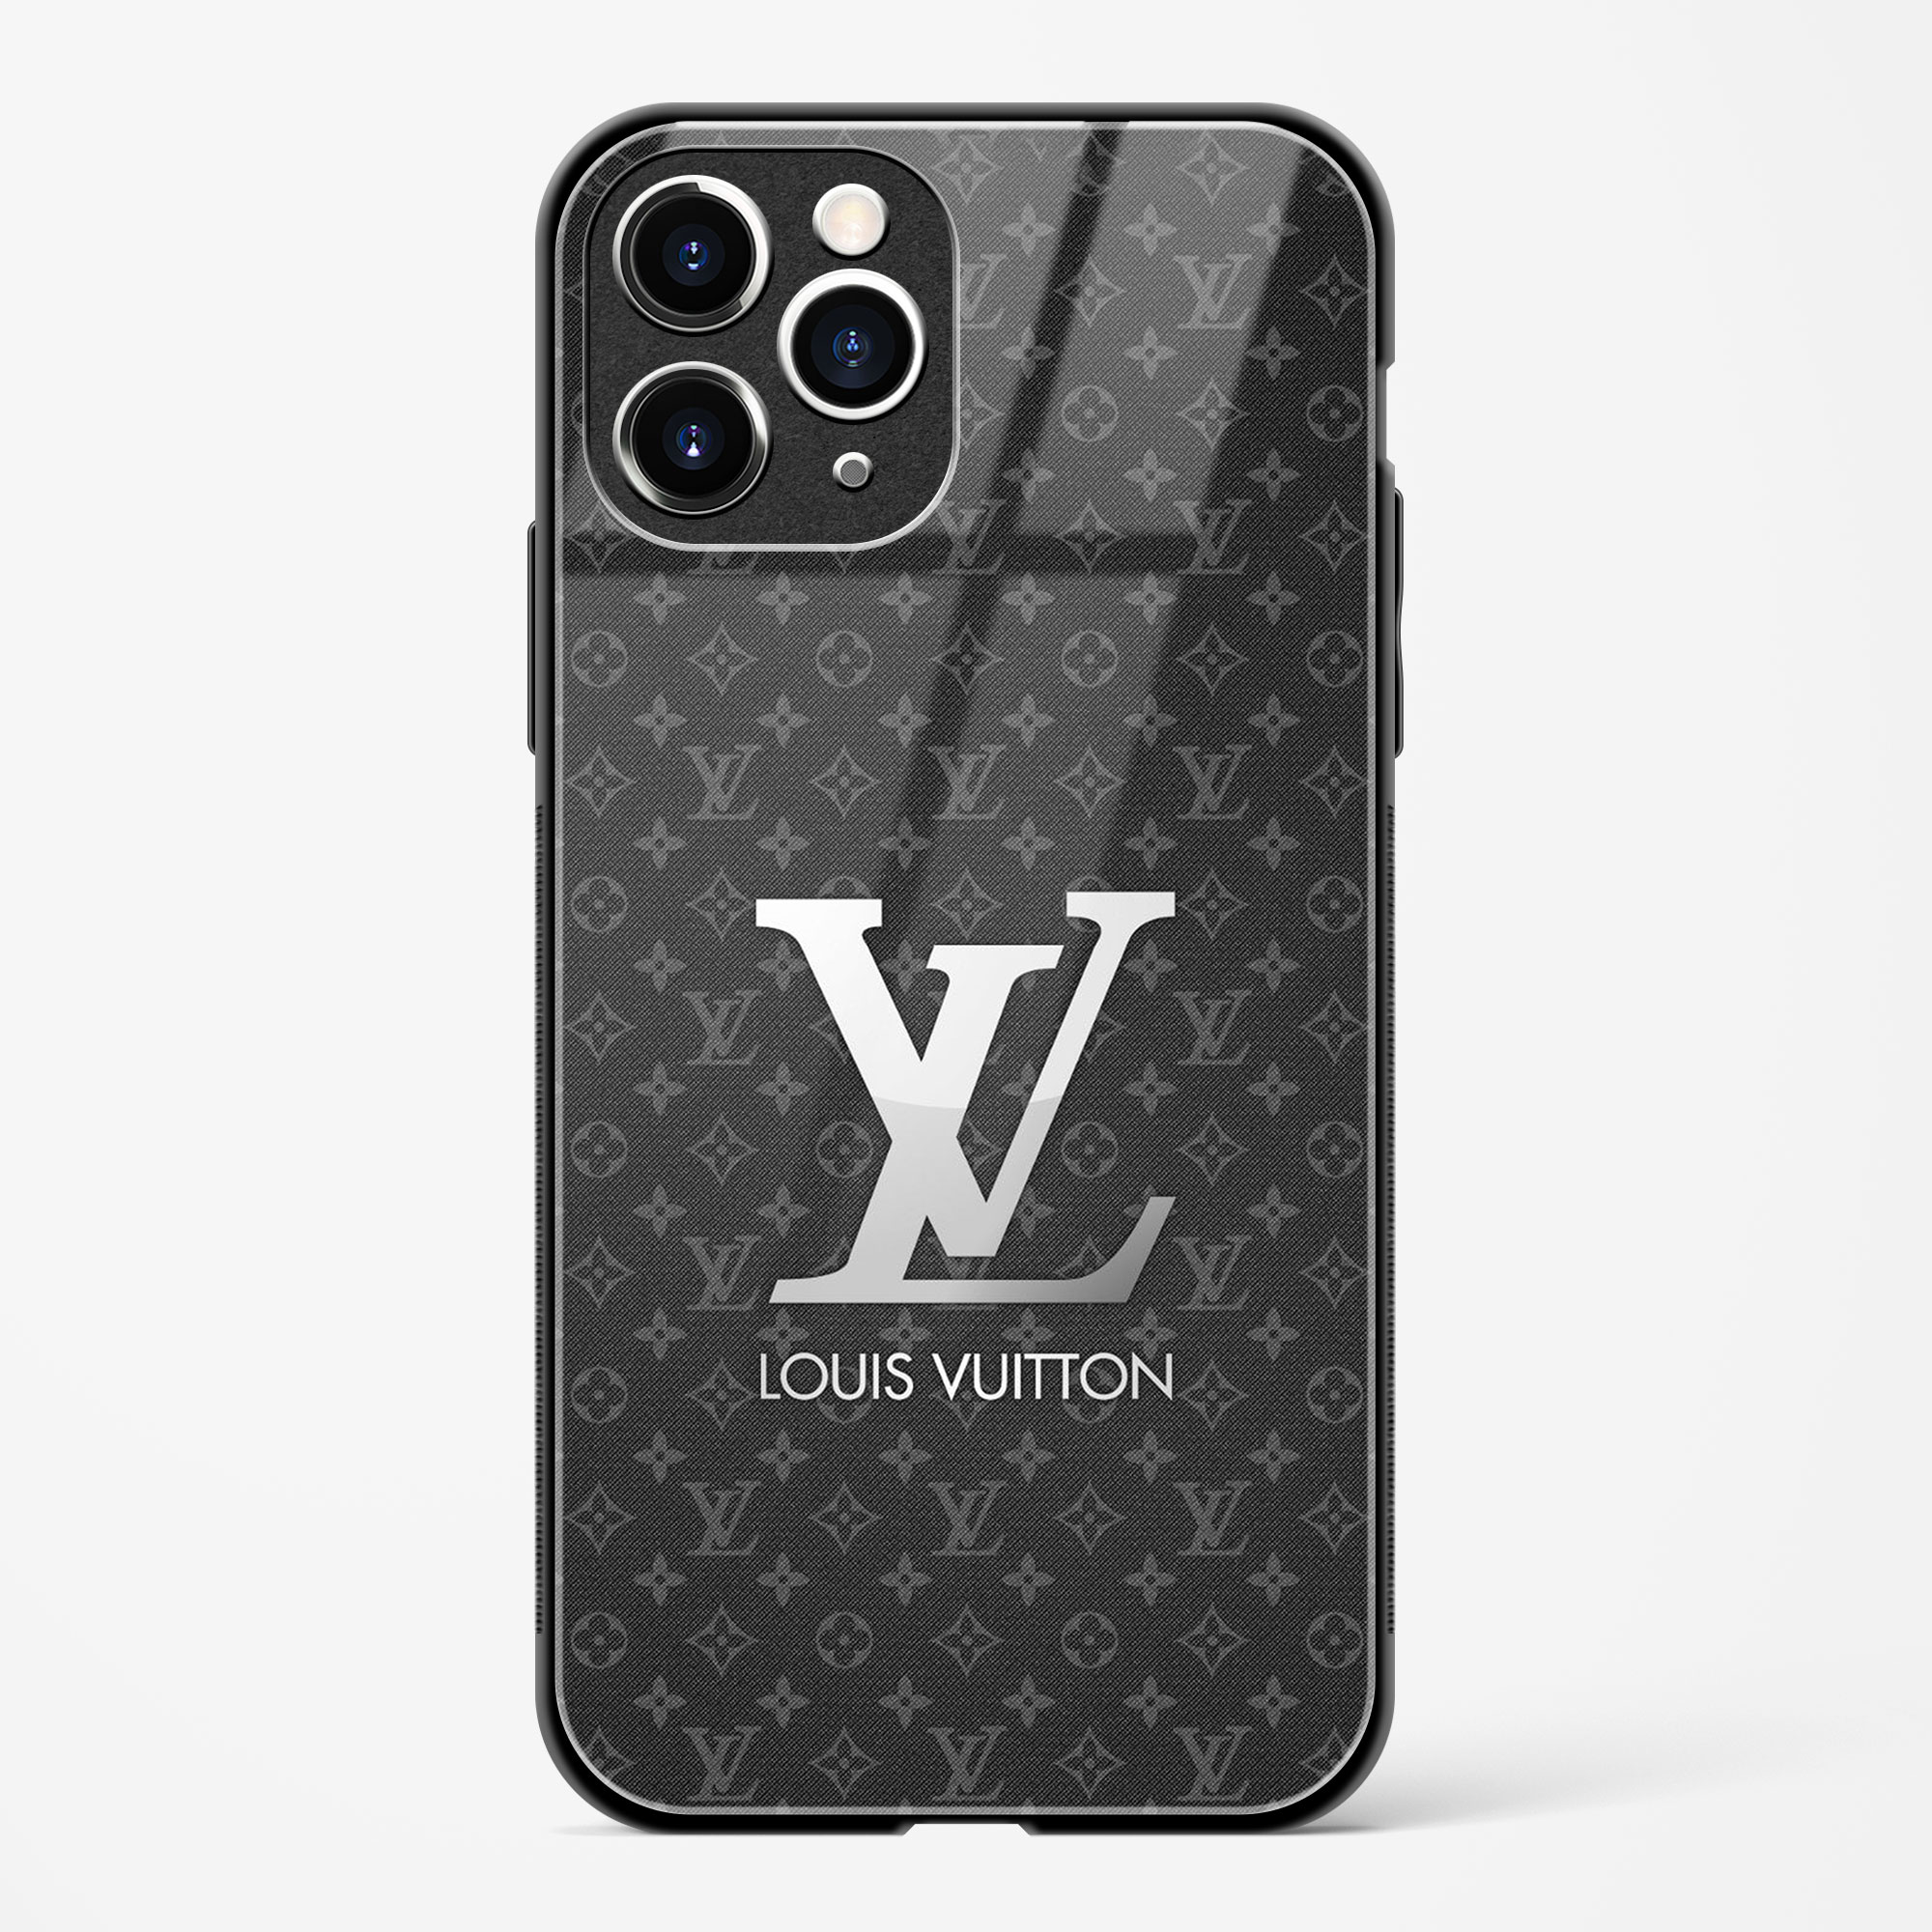 lv iphone 11 pro max case